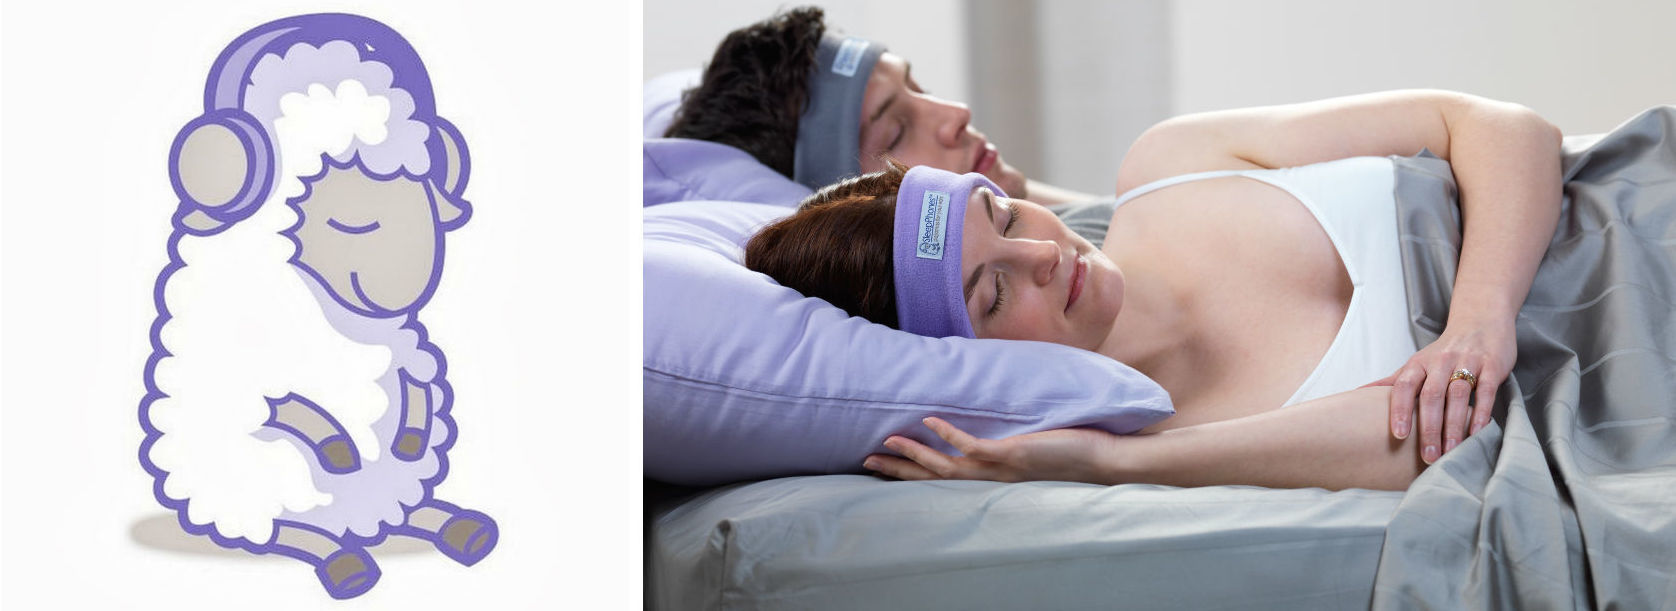 Как современные технологии обеспечивают здоровый сон: подборка гаджетов для улучшения качества сна - 9